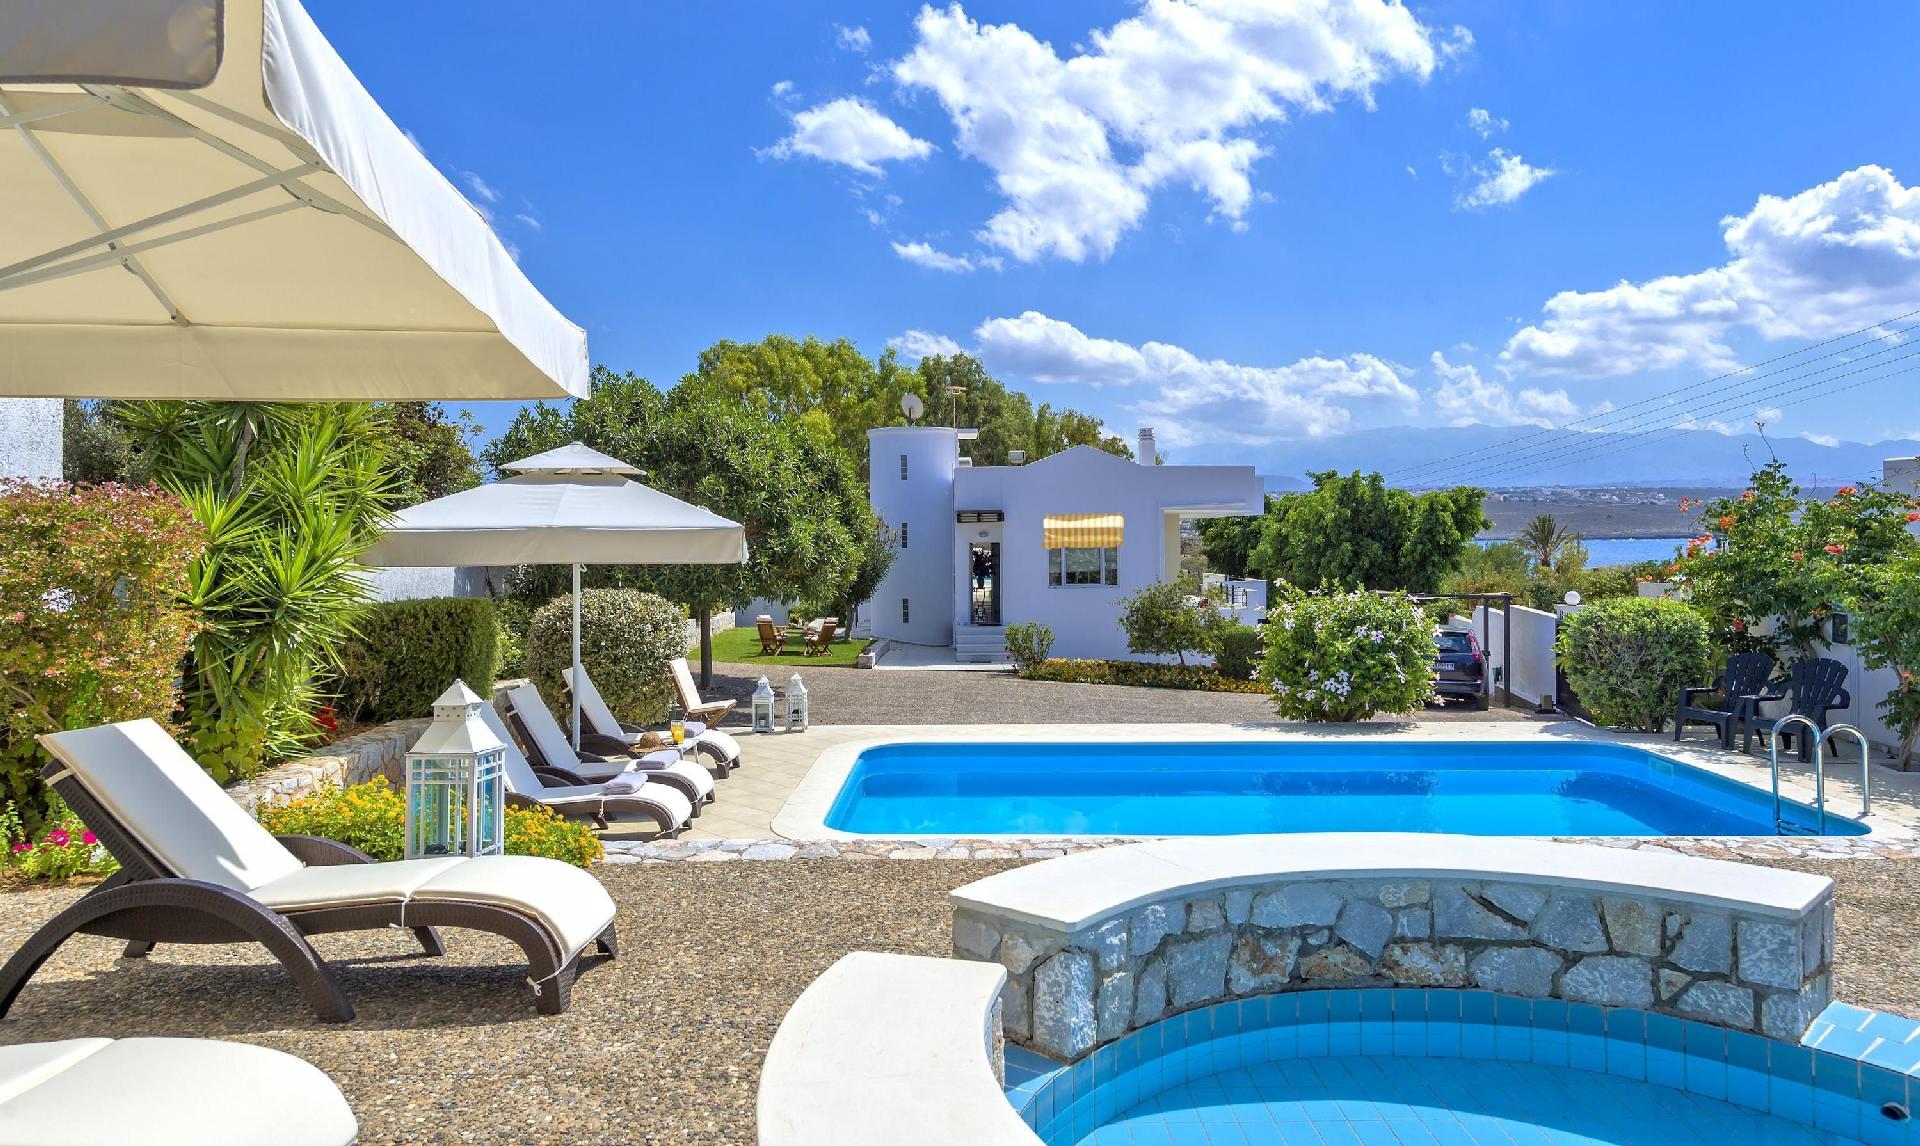 Villa mit Garten, Veranda und Pool, Kinderpool sow Ferienwohnung in Griechenland